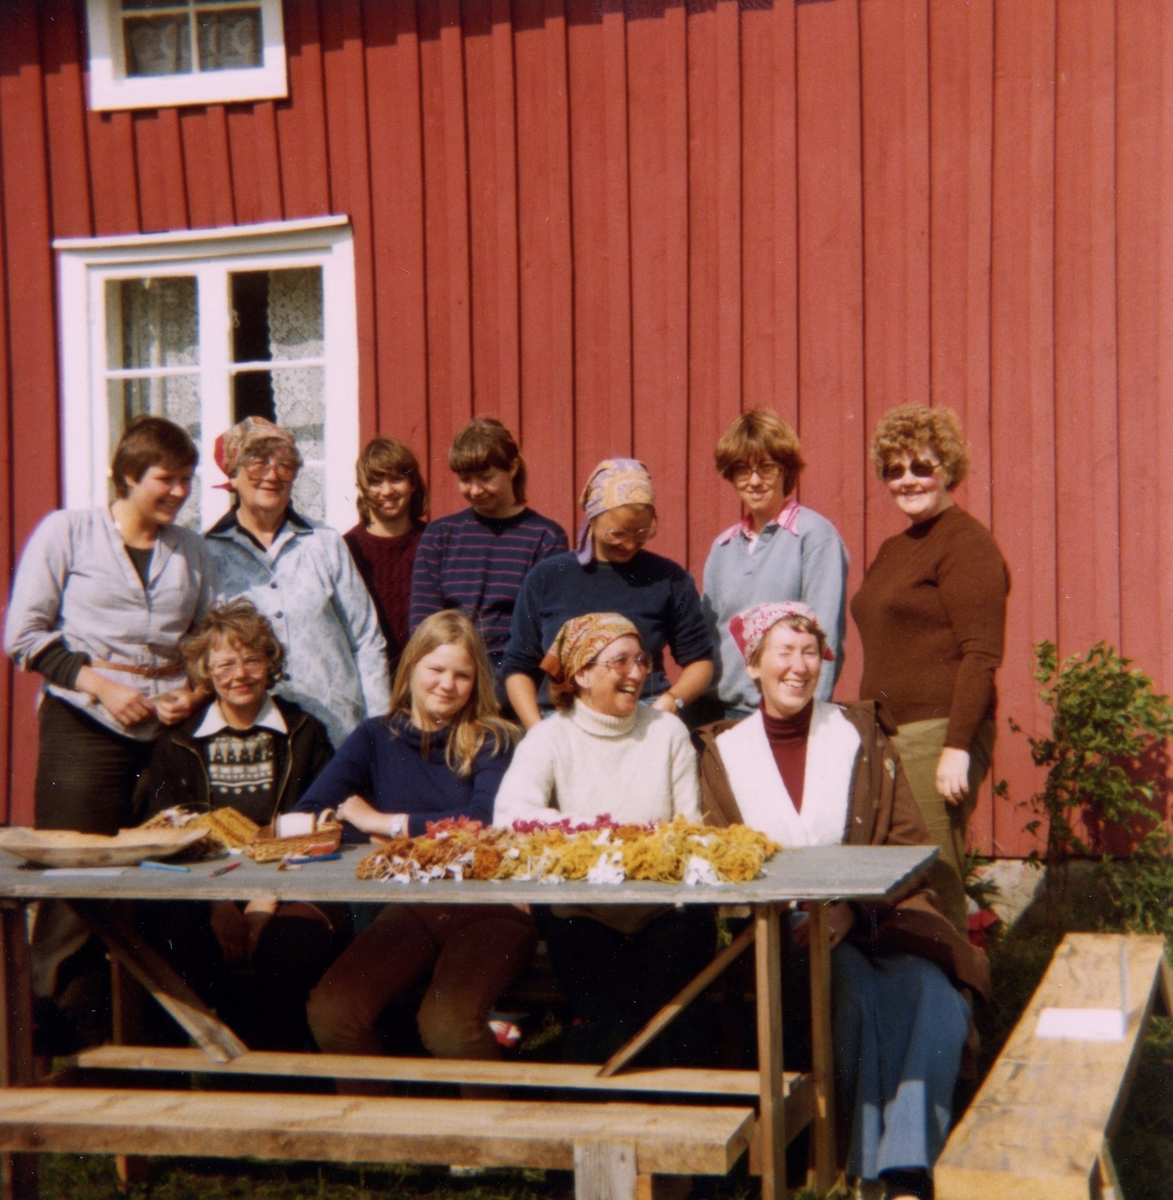 Växtfärgningskurs på Långåker 1:3 (Hembygdsgården) 1980-tal.
Sittande från vänster: 1. Ingegerd Benkel, 4. MajBritt Andersson. 
Stående från vänster: 1. Katarina Benkel, 2. Inez Gustafsson, 6. Agneta Johansson och 7. Birgitta Olsson. Övriga namn är okända.